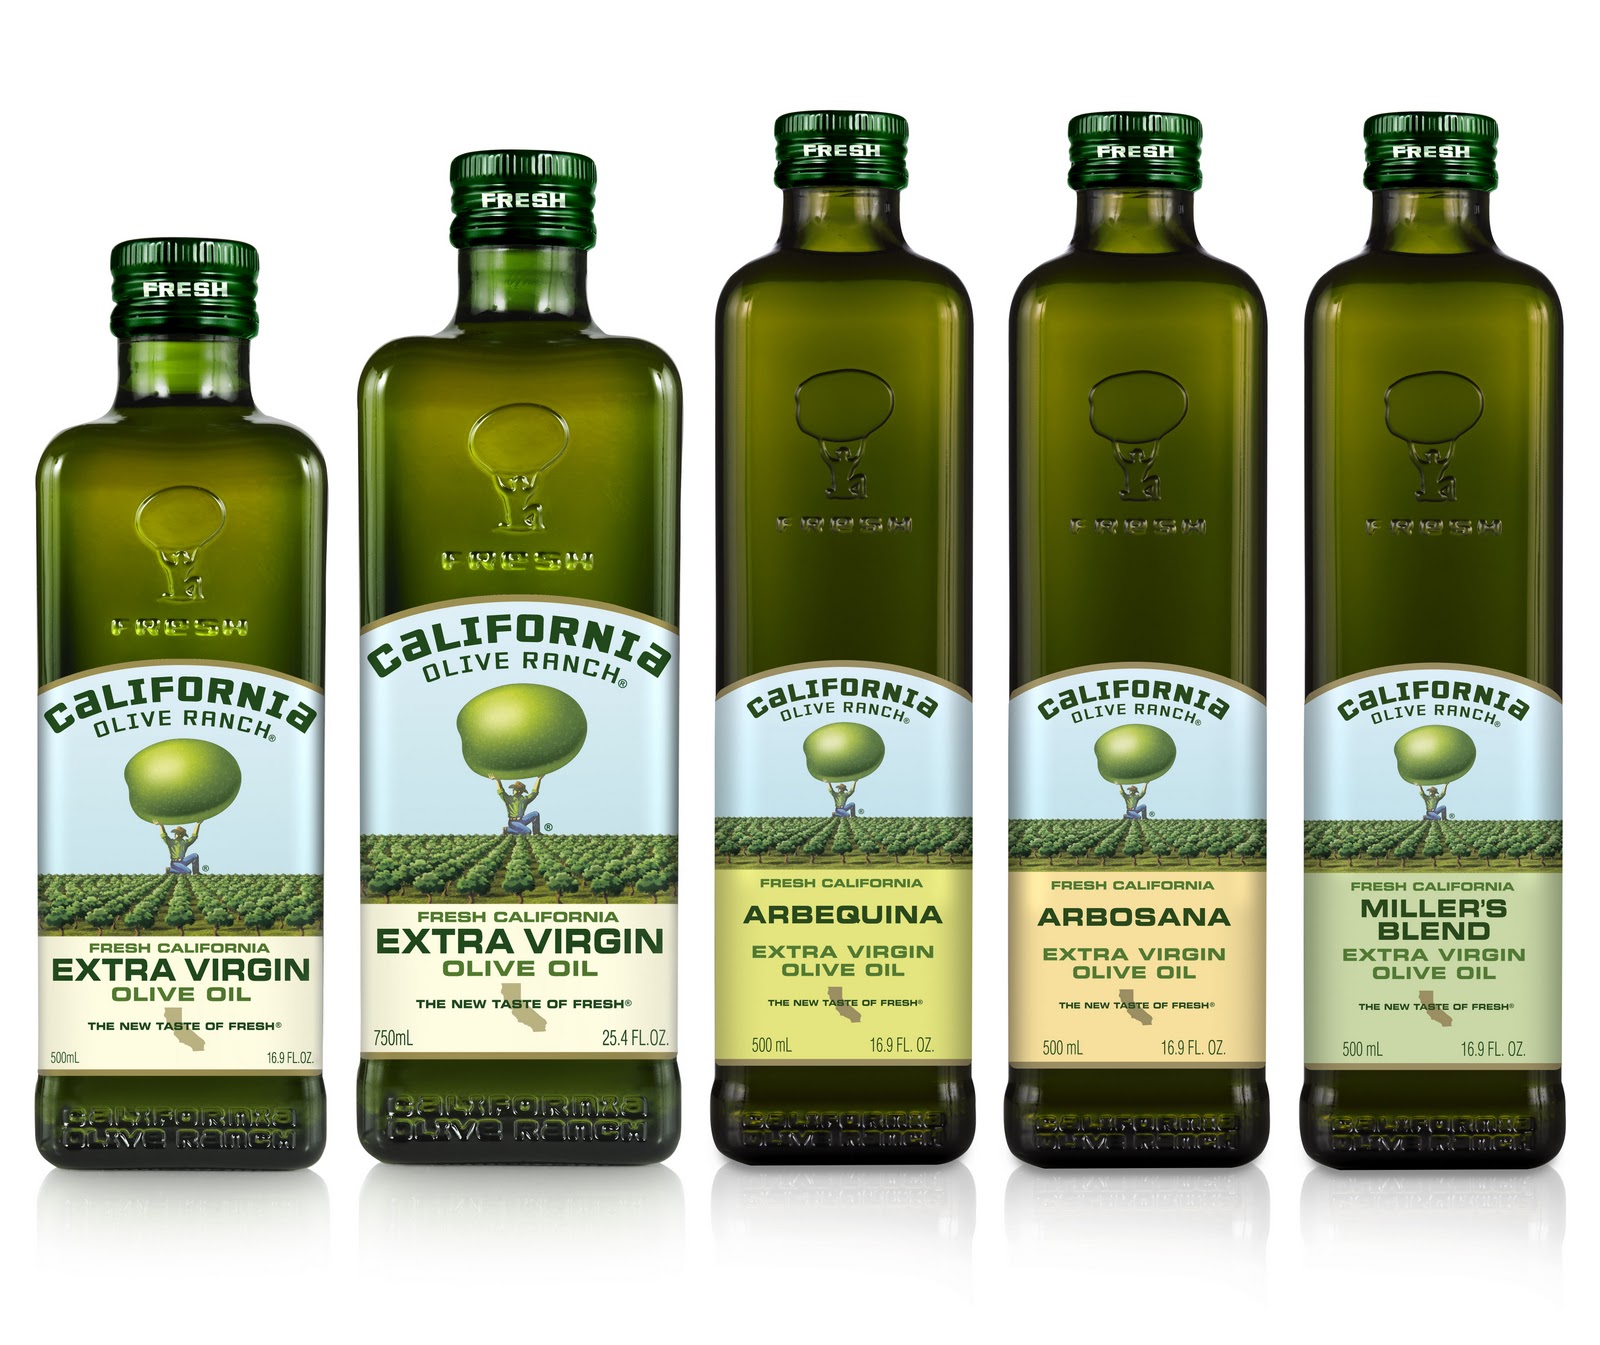 Код оливкового масла